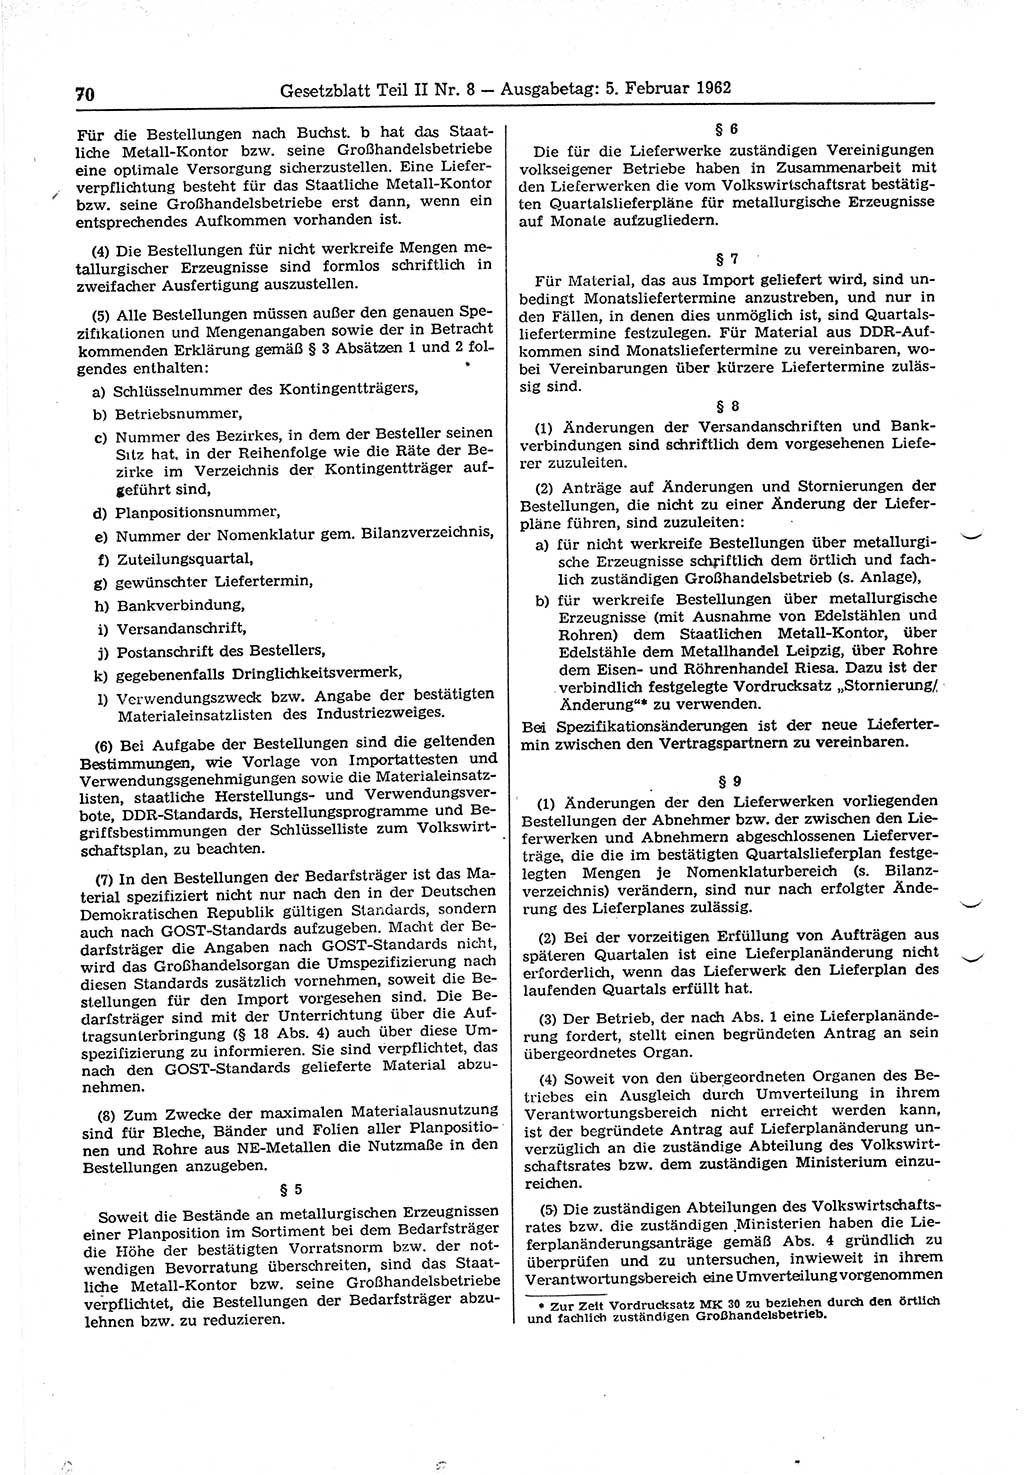 Gesetzblatt (GBl.) der Deutschen Demokratischen Republik (DDR) Teil ⅠⅠ 1962, Seite 70 (GBl. DDR ⅠⅠ 1962, S. 70)